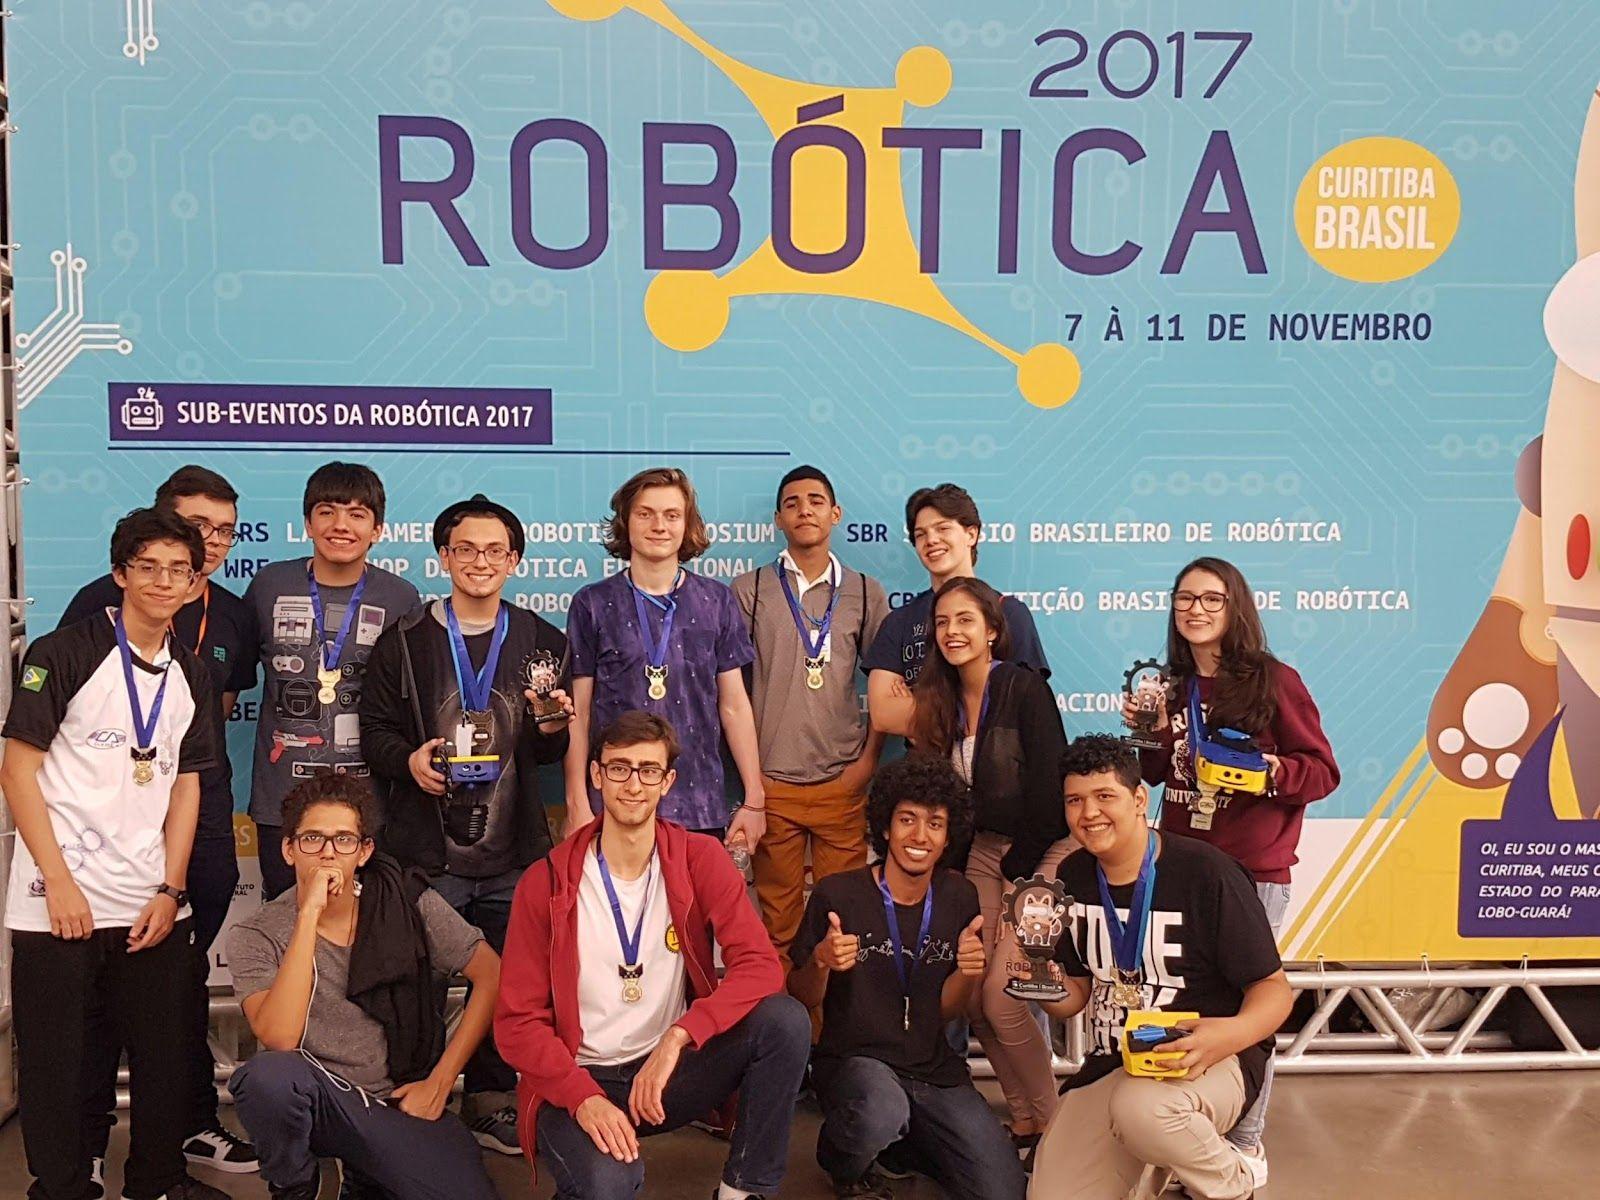 Foto: Participantes do minicurso de robótica na OBR 2017, Curitiba PR.